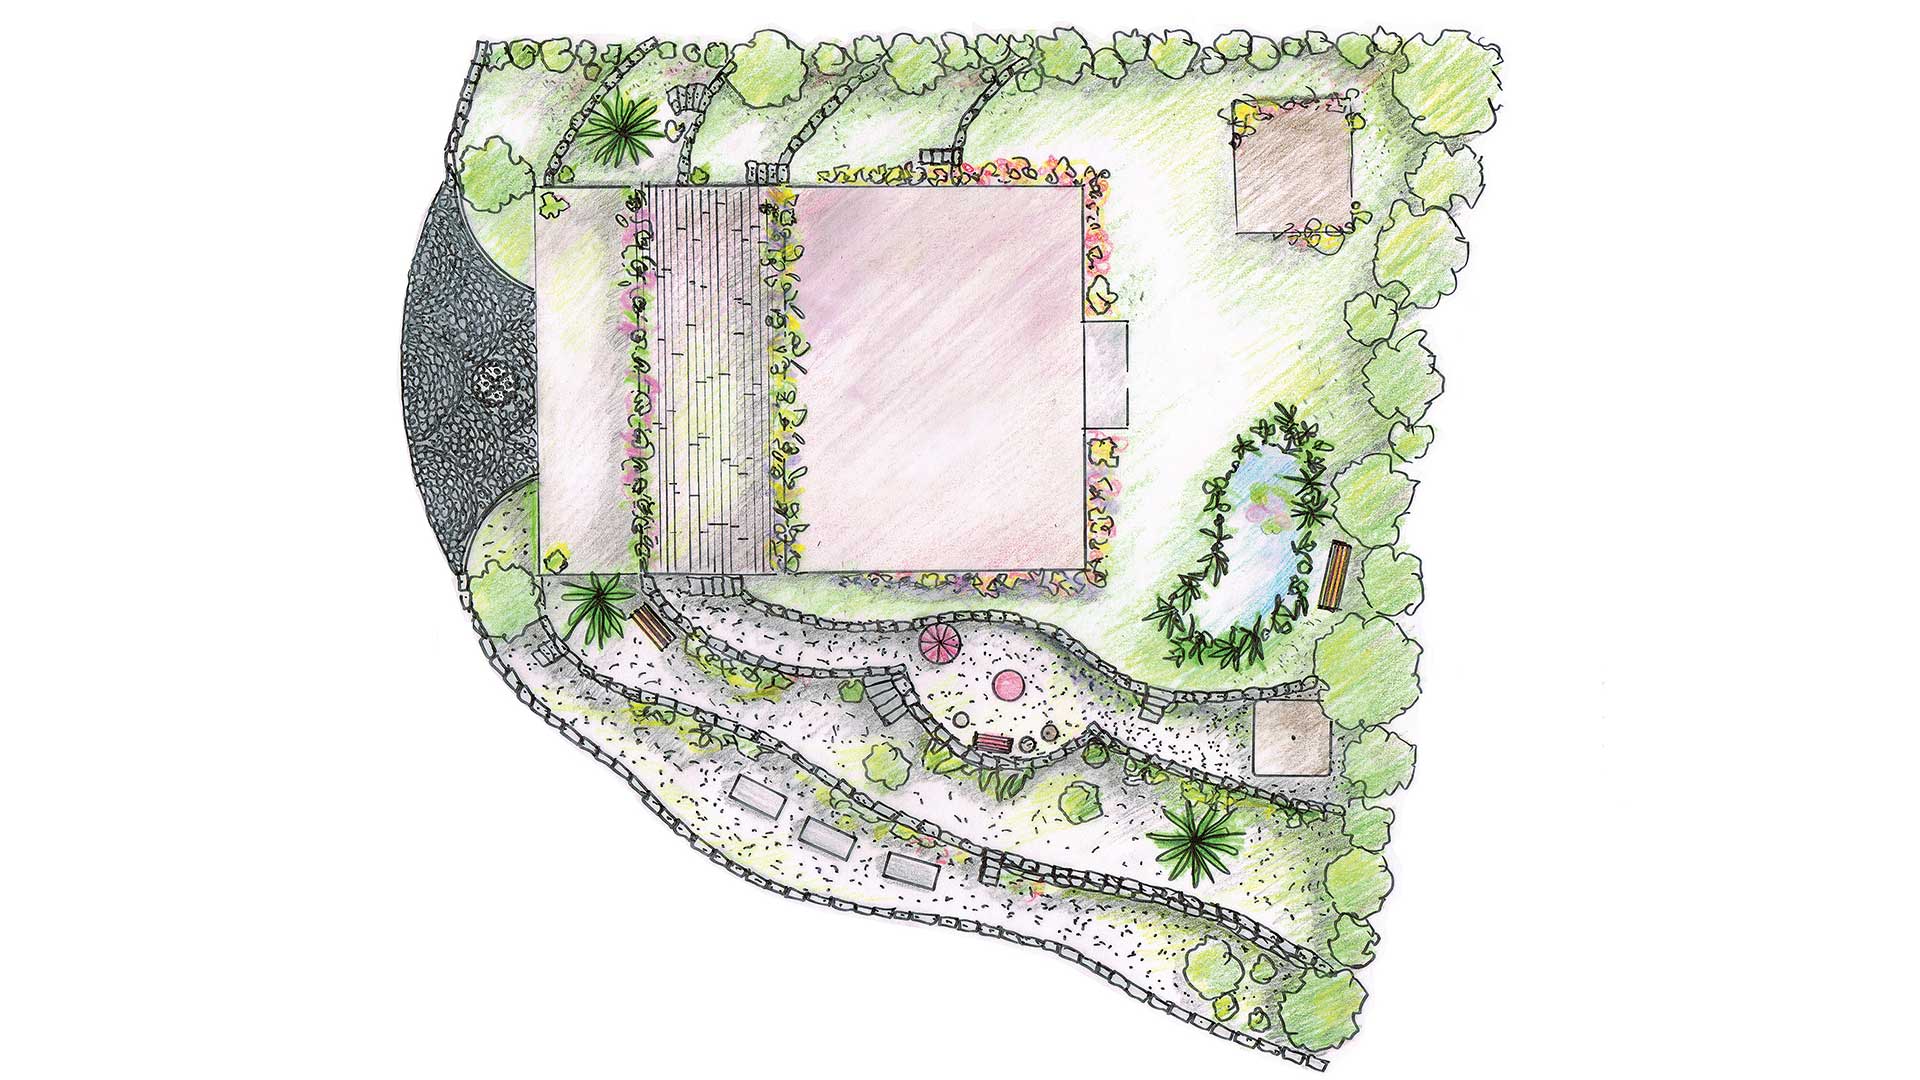 Plan Naturgarten, von Markus Frei